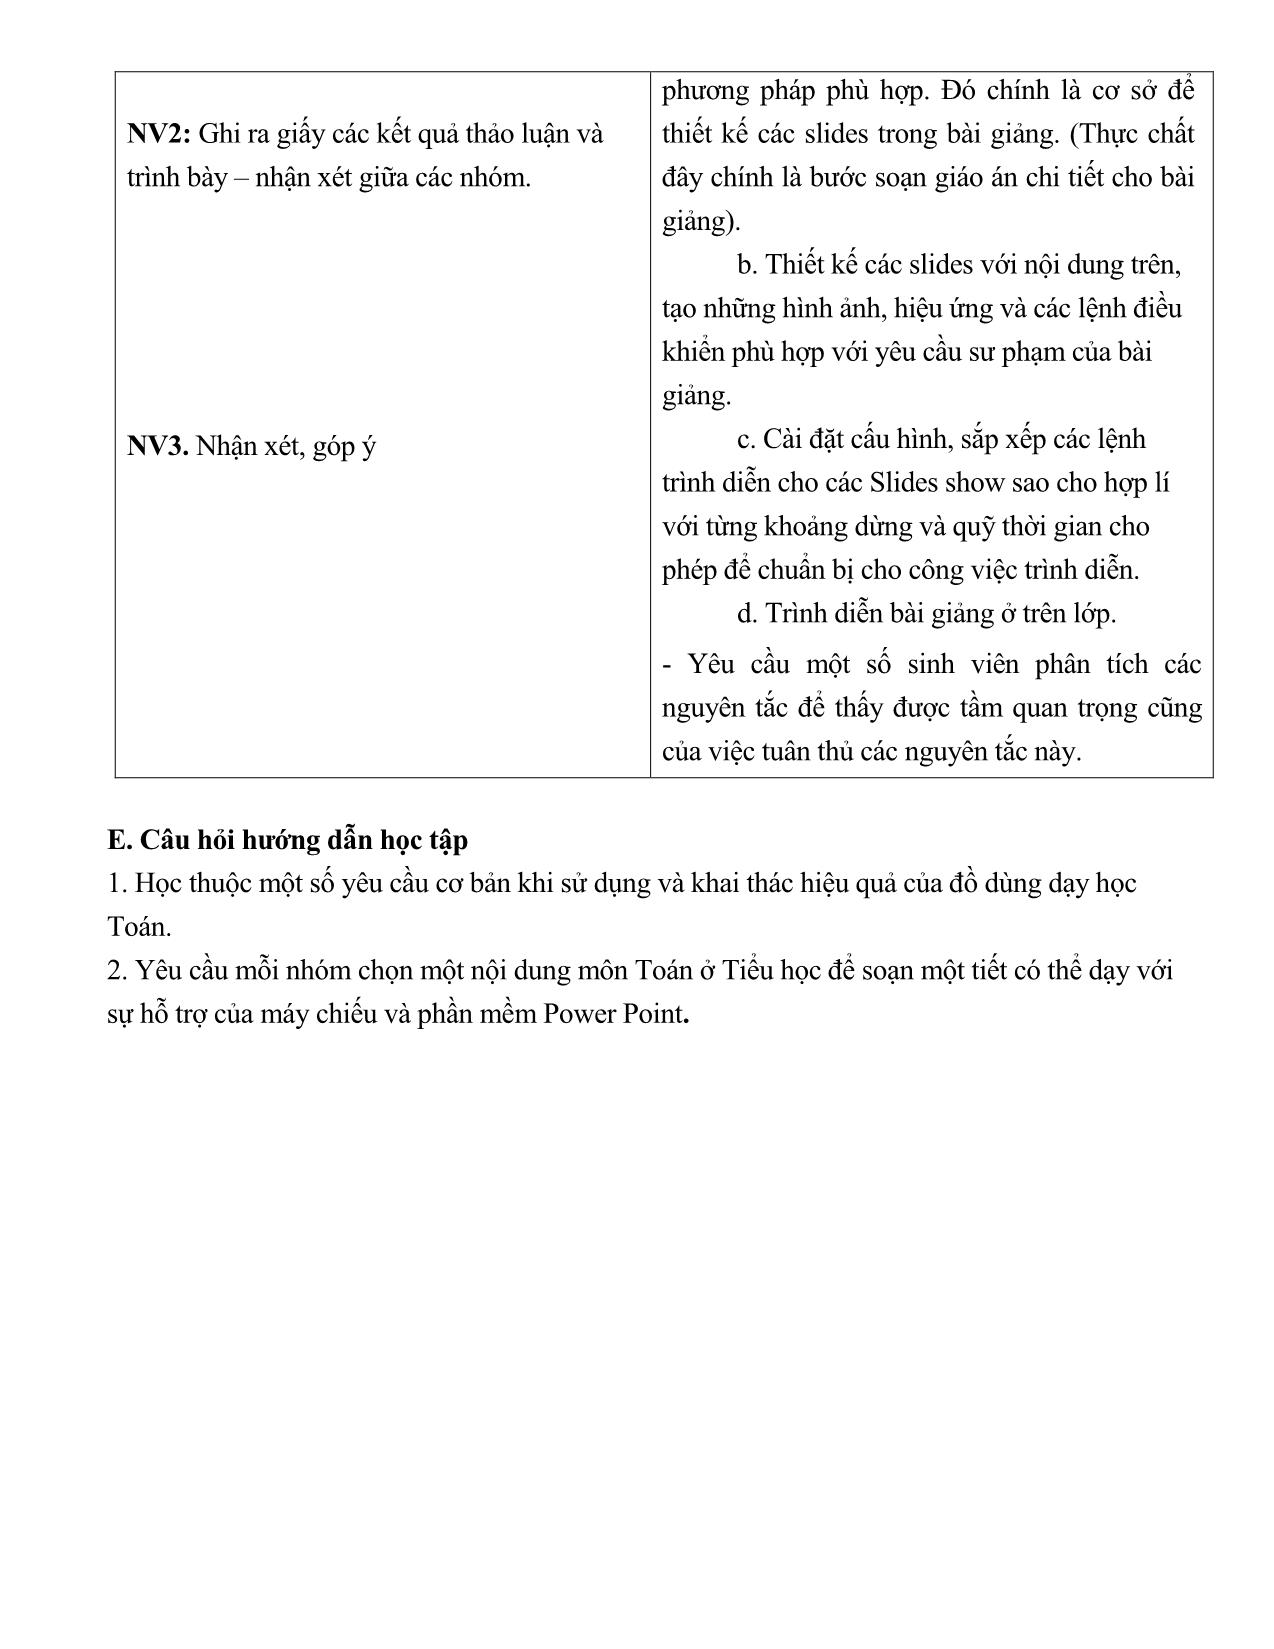 Toán tiểu học - Chương 4: Sử dụng thiết bị dạy học toán ở tiểu học trang 8